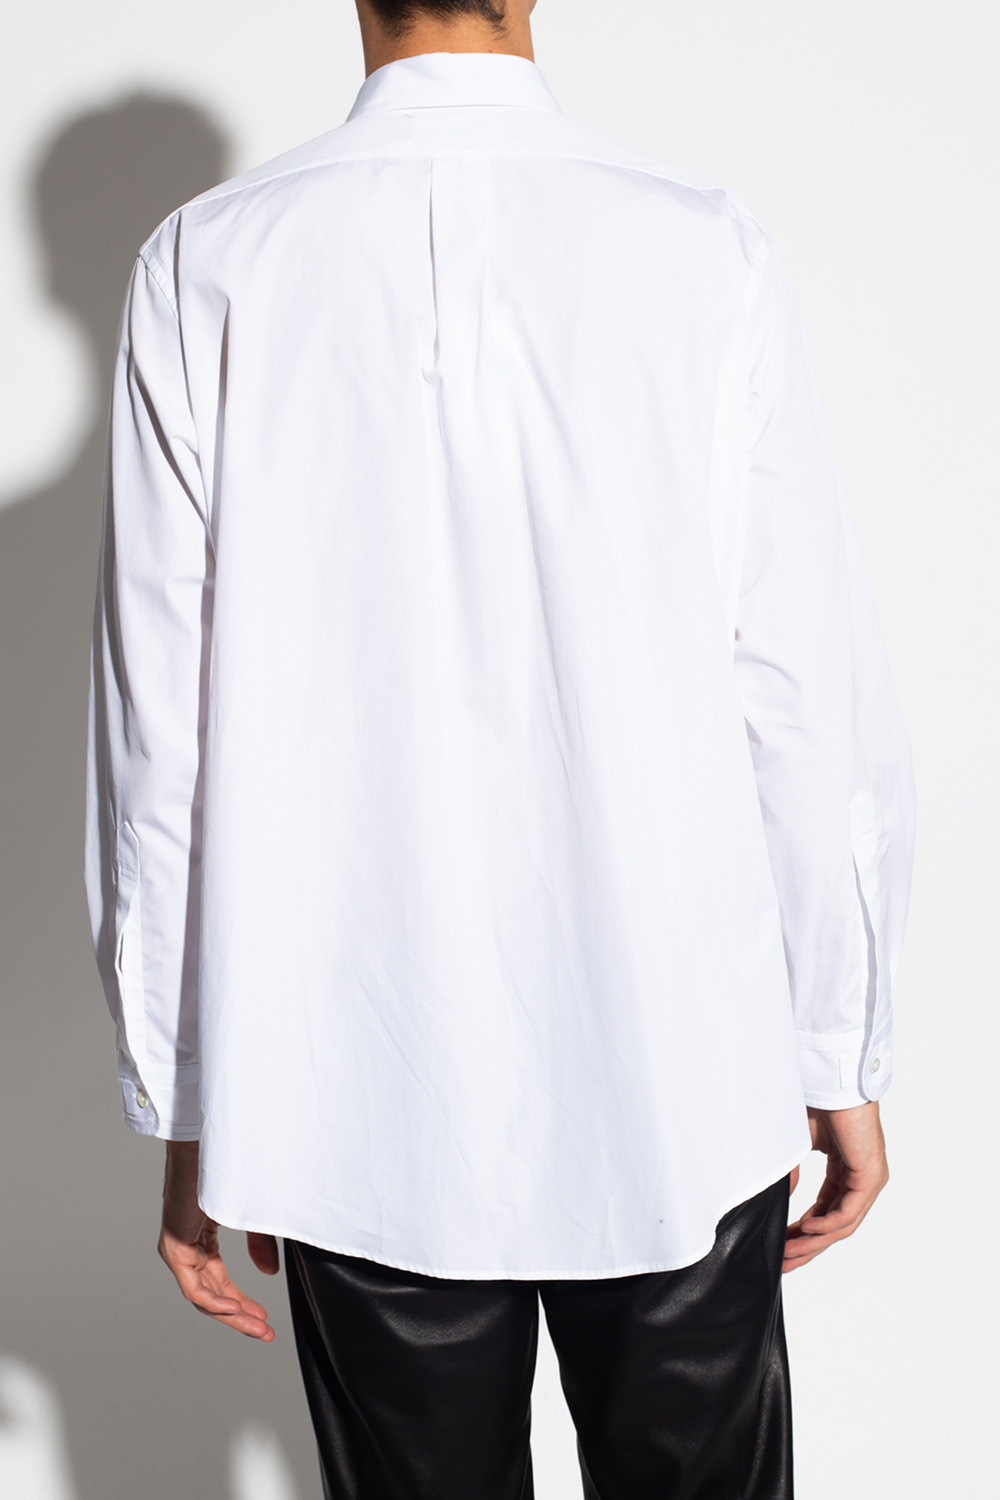 Maison Margiela Ternet t-shirt i sweat-model med print fra ASOS WHITE